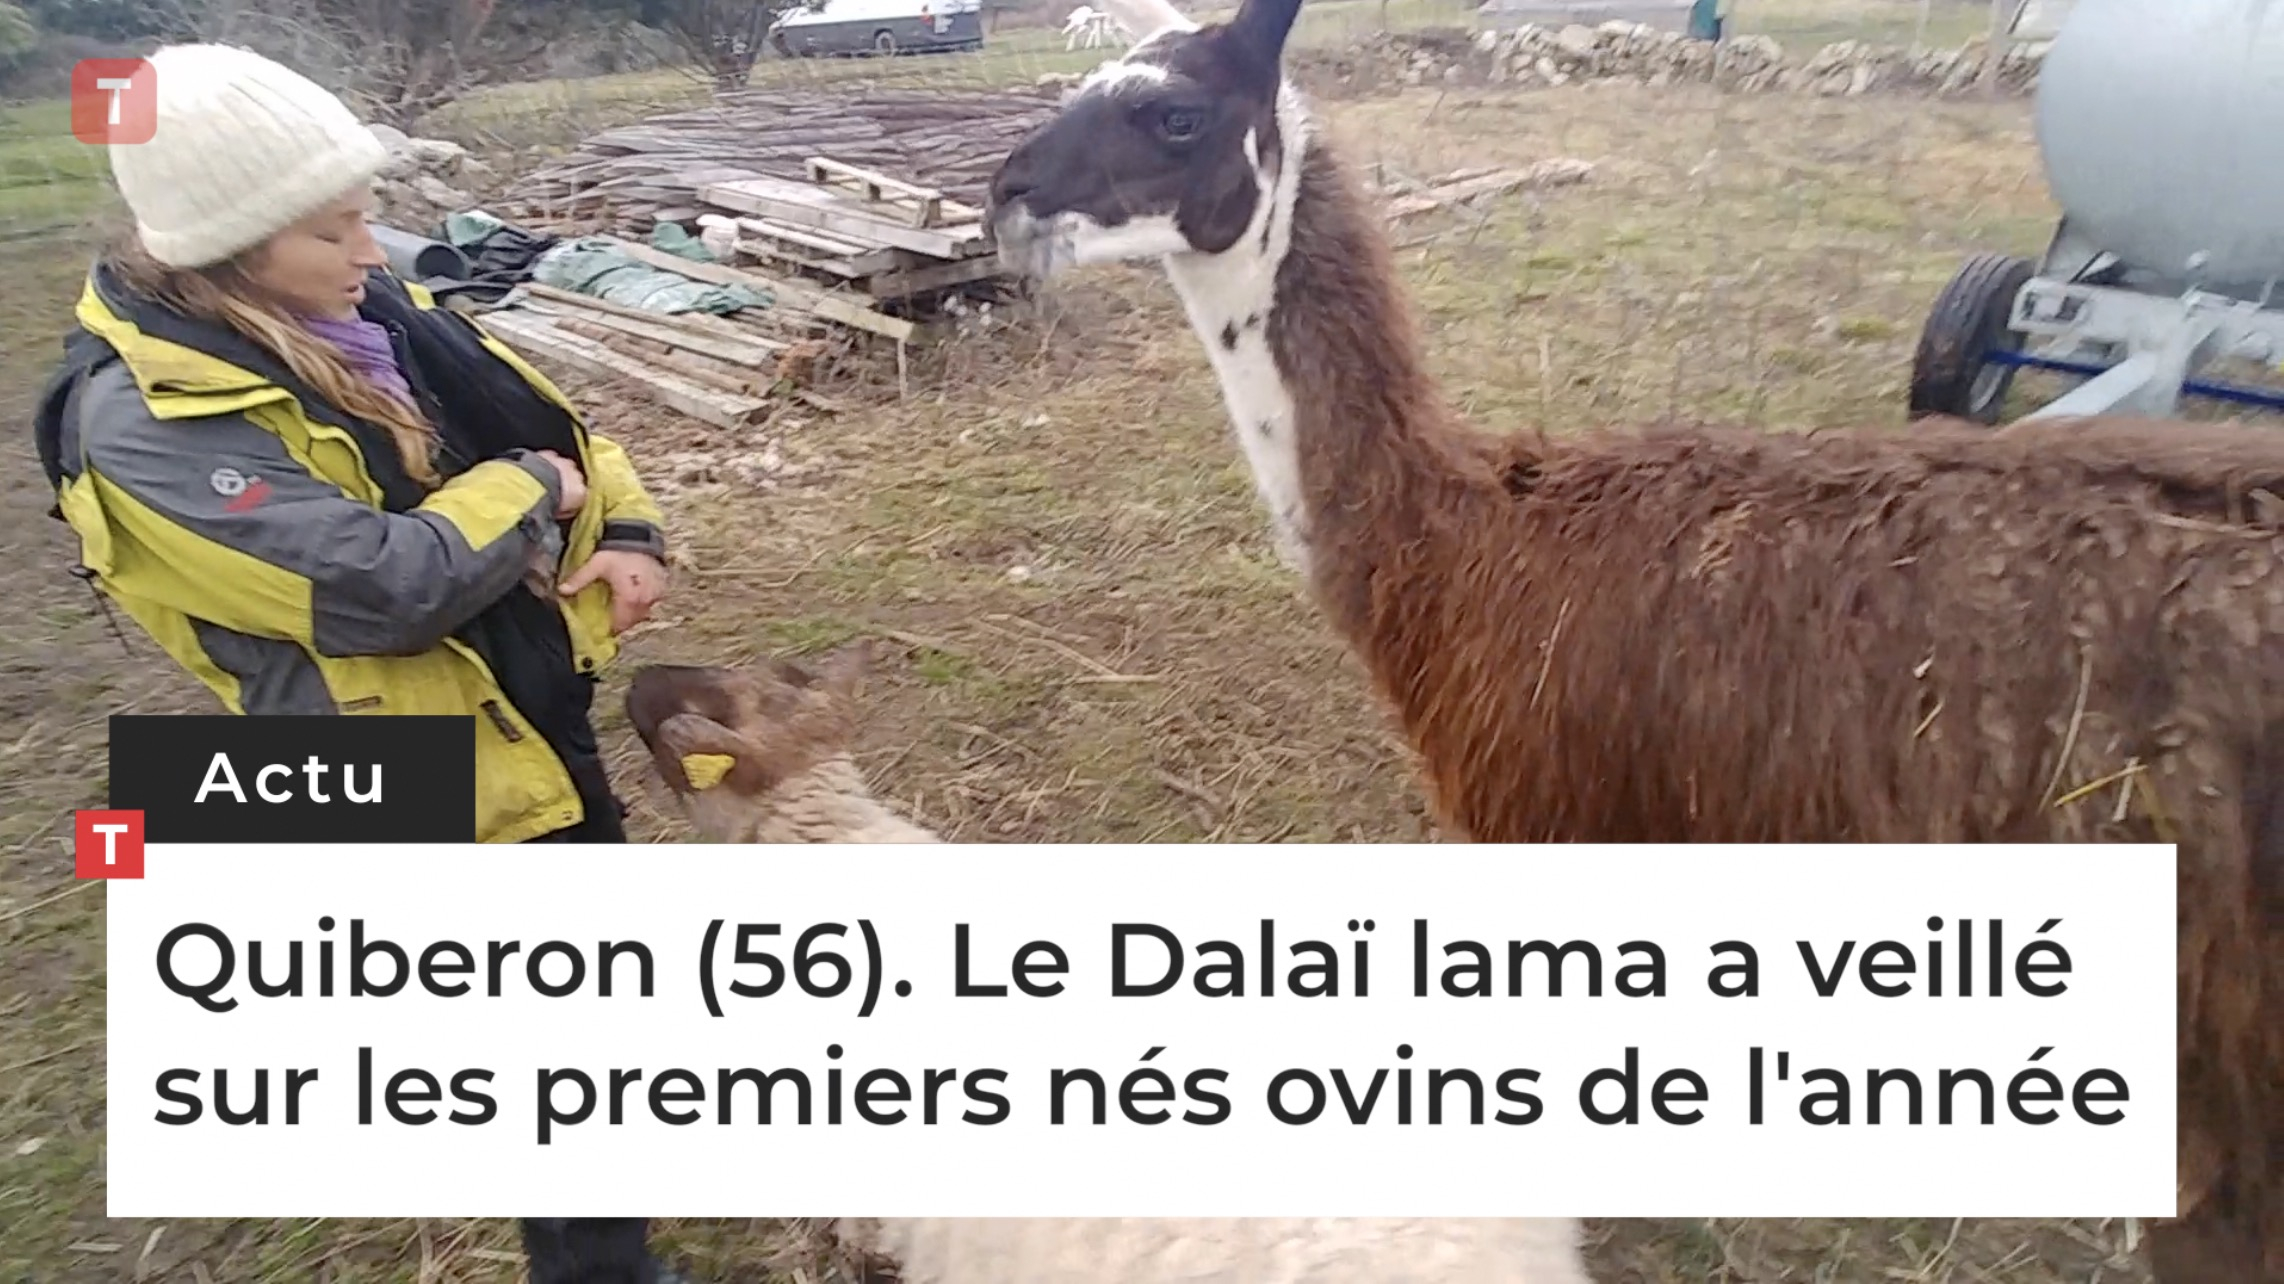 Quiberon (56). Le Dalaï lama a veillé sur les premiers nés ovins de l'année (Le Télégramme)